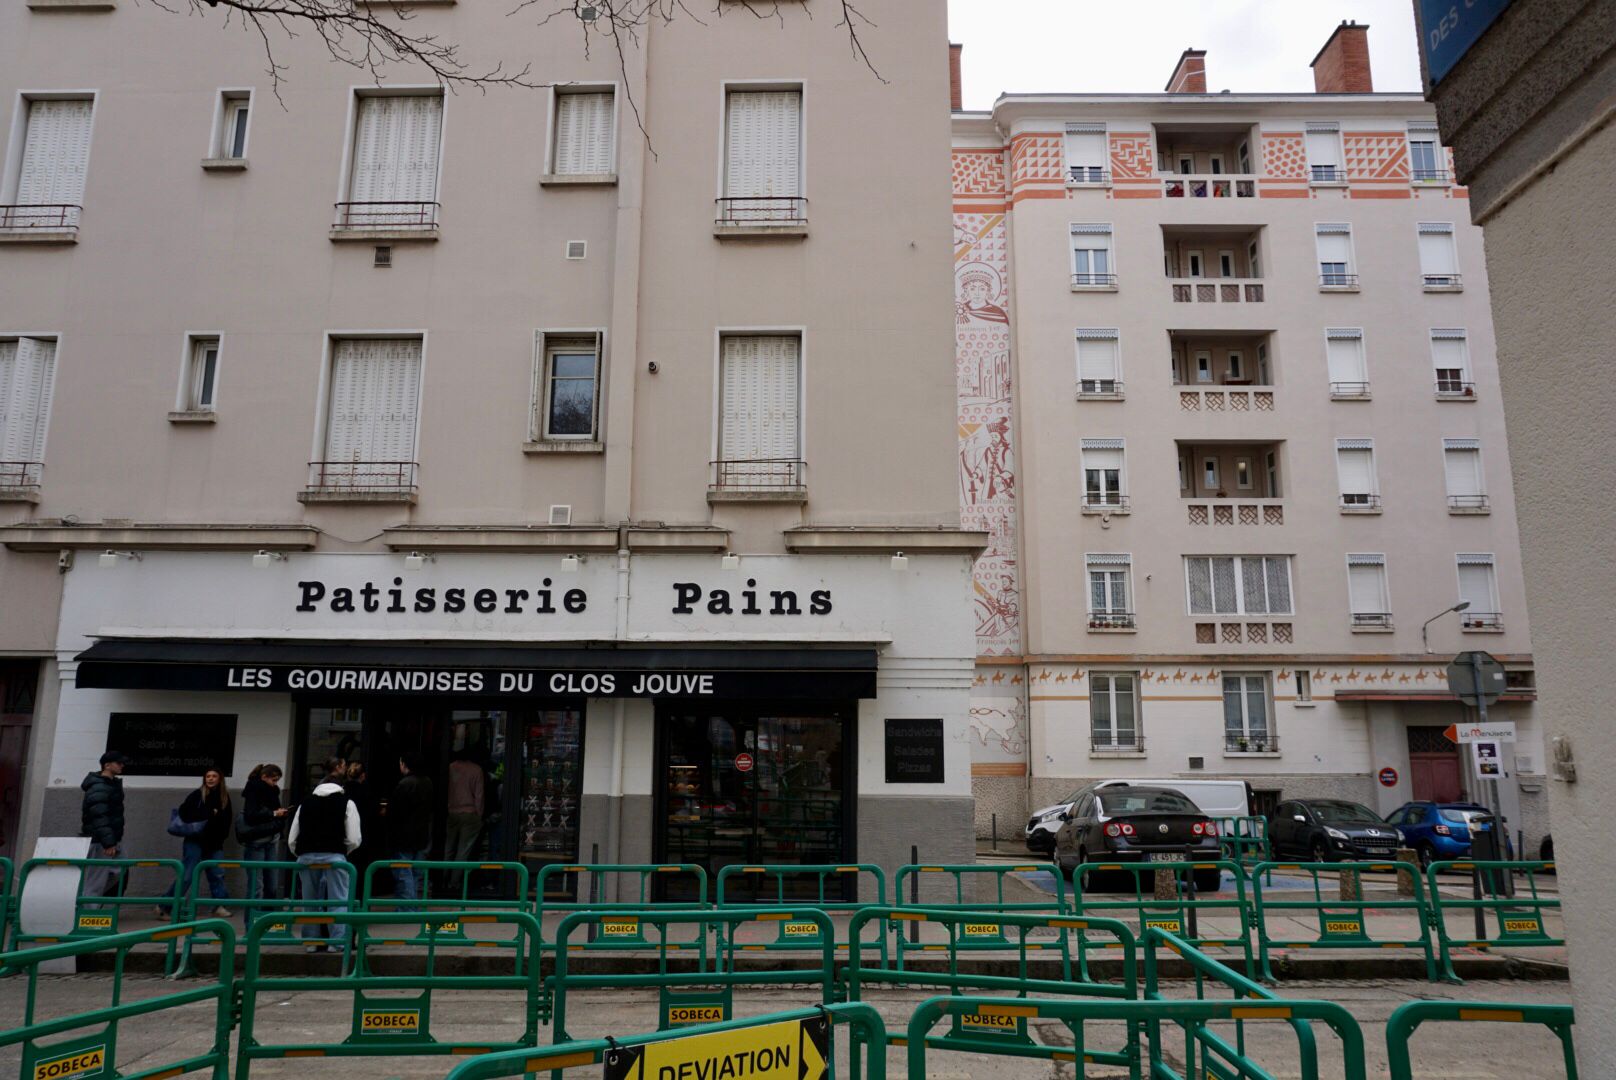 Des immeubles résidentiels de plusieurs étages avec des commerces au rez-de-chaussée, dont une boulangerie avec l'inscription "Pâtisserie Pains", derrière une clôture verte.